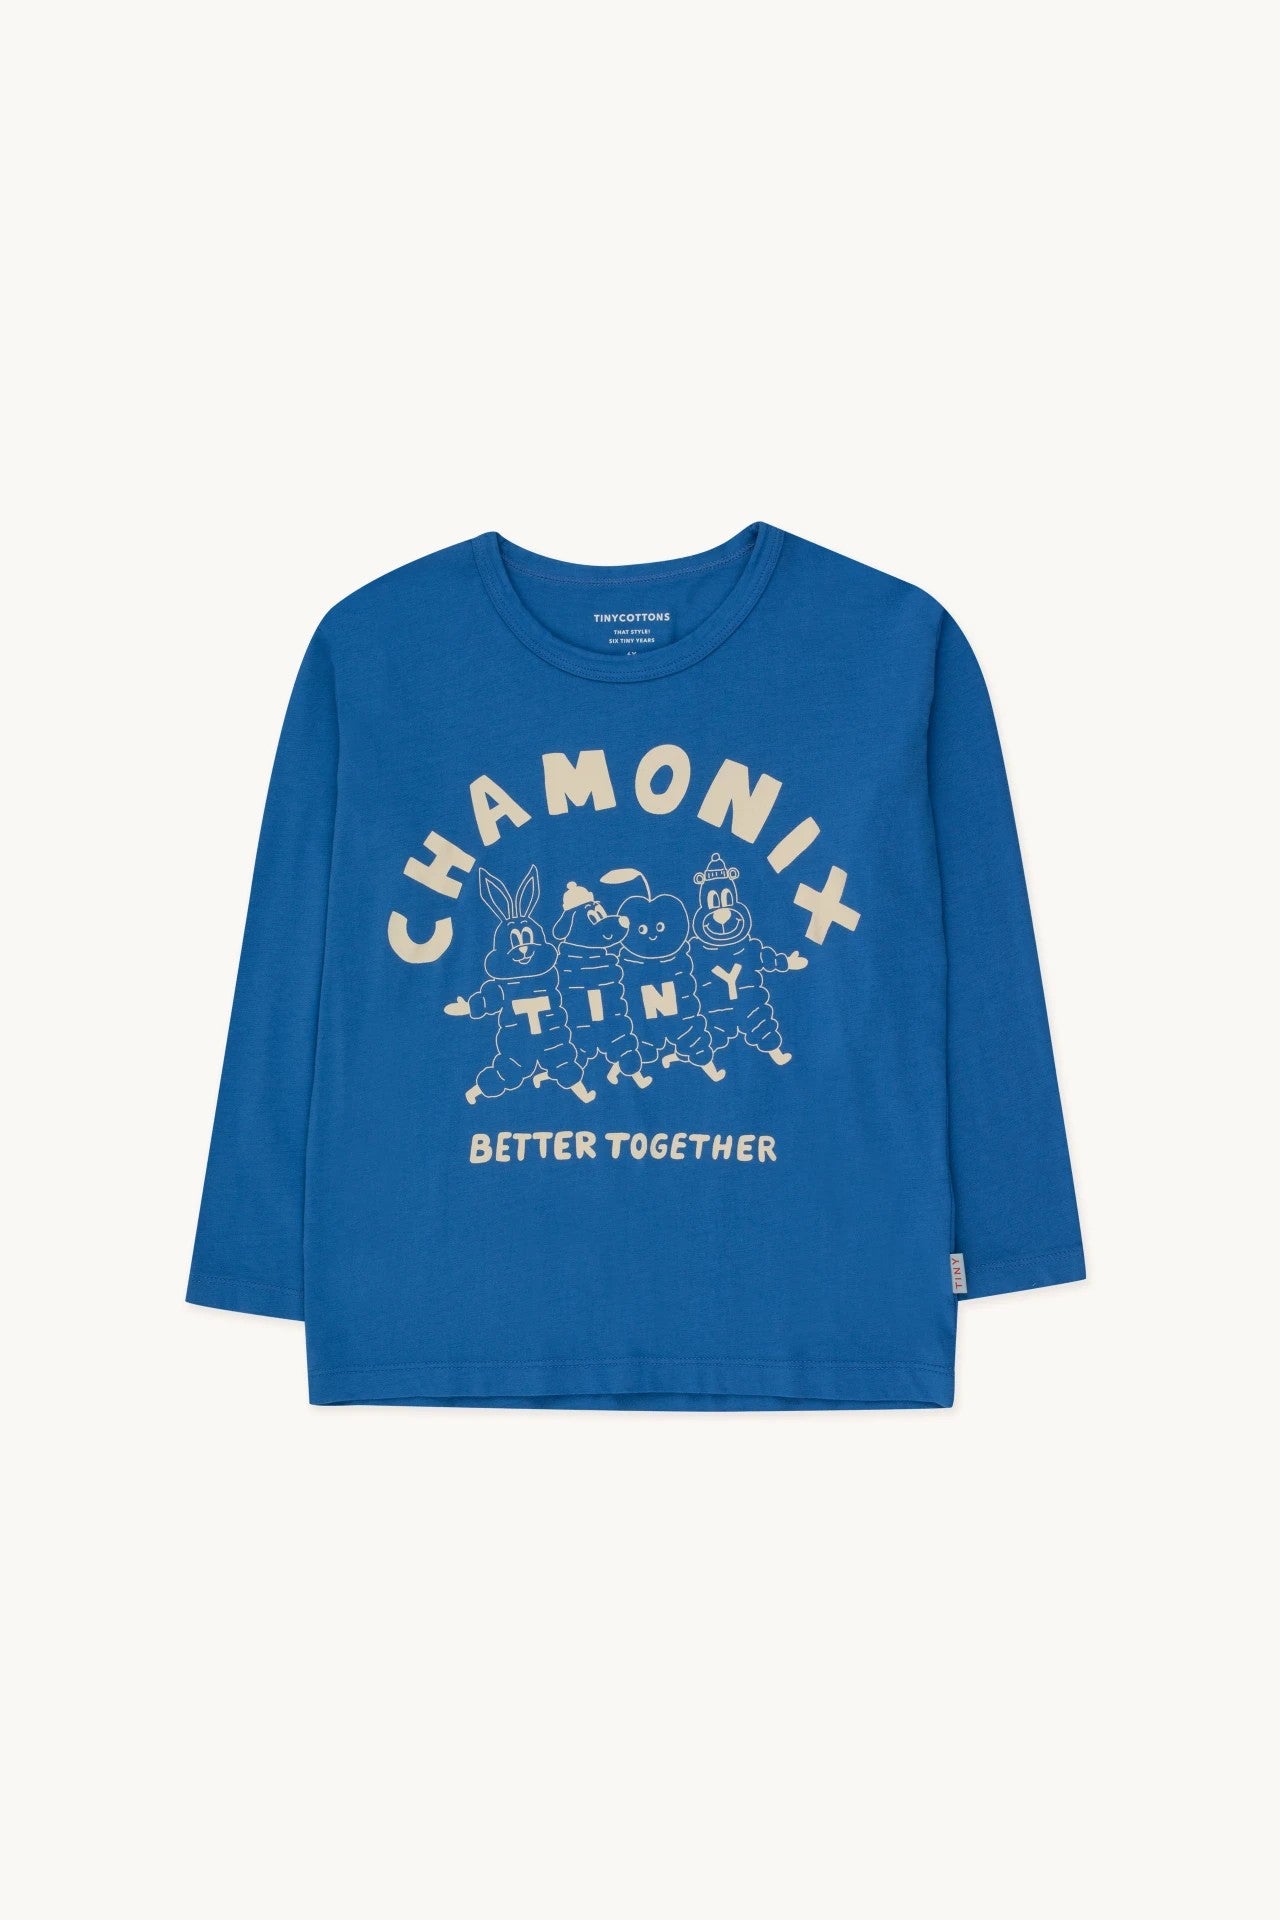 Tinycottons camiseta Chamonix